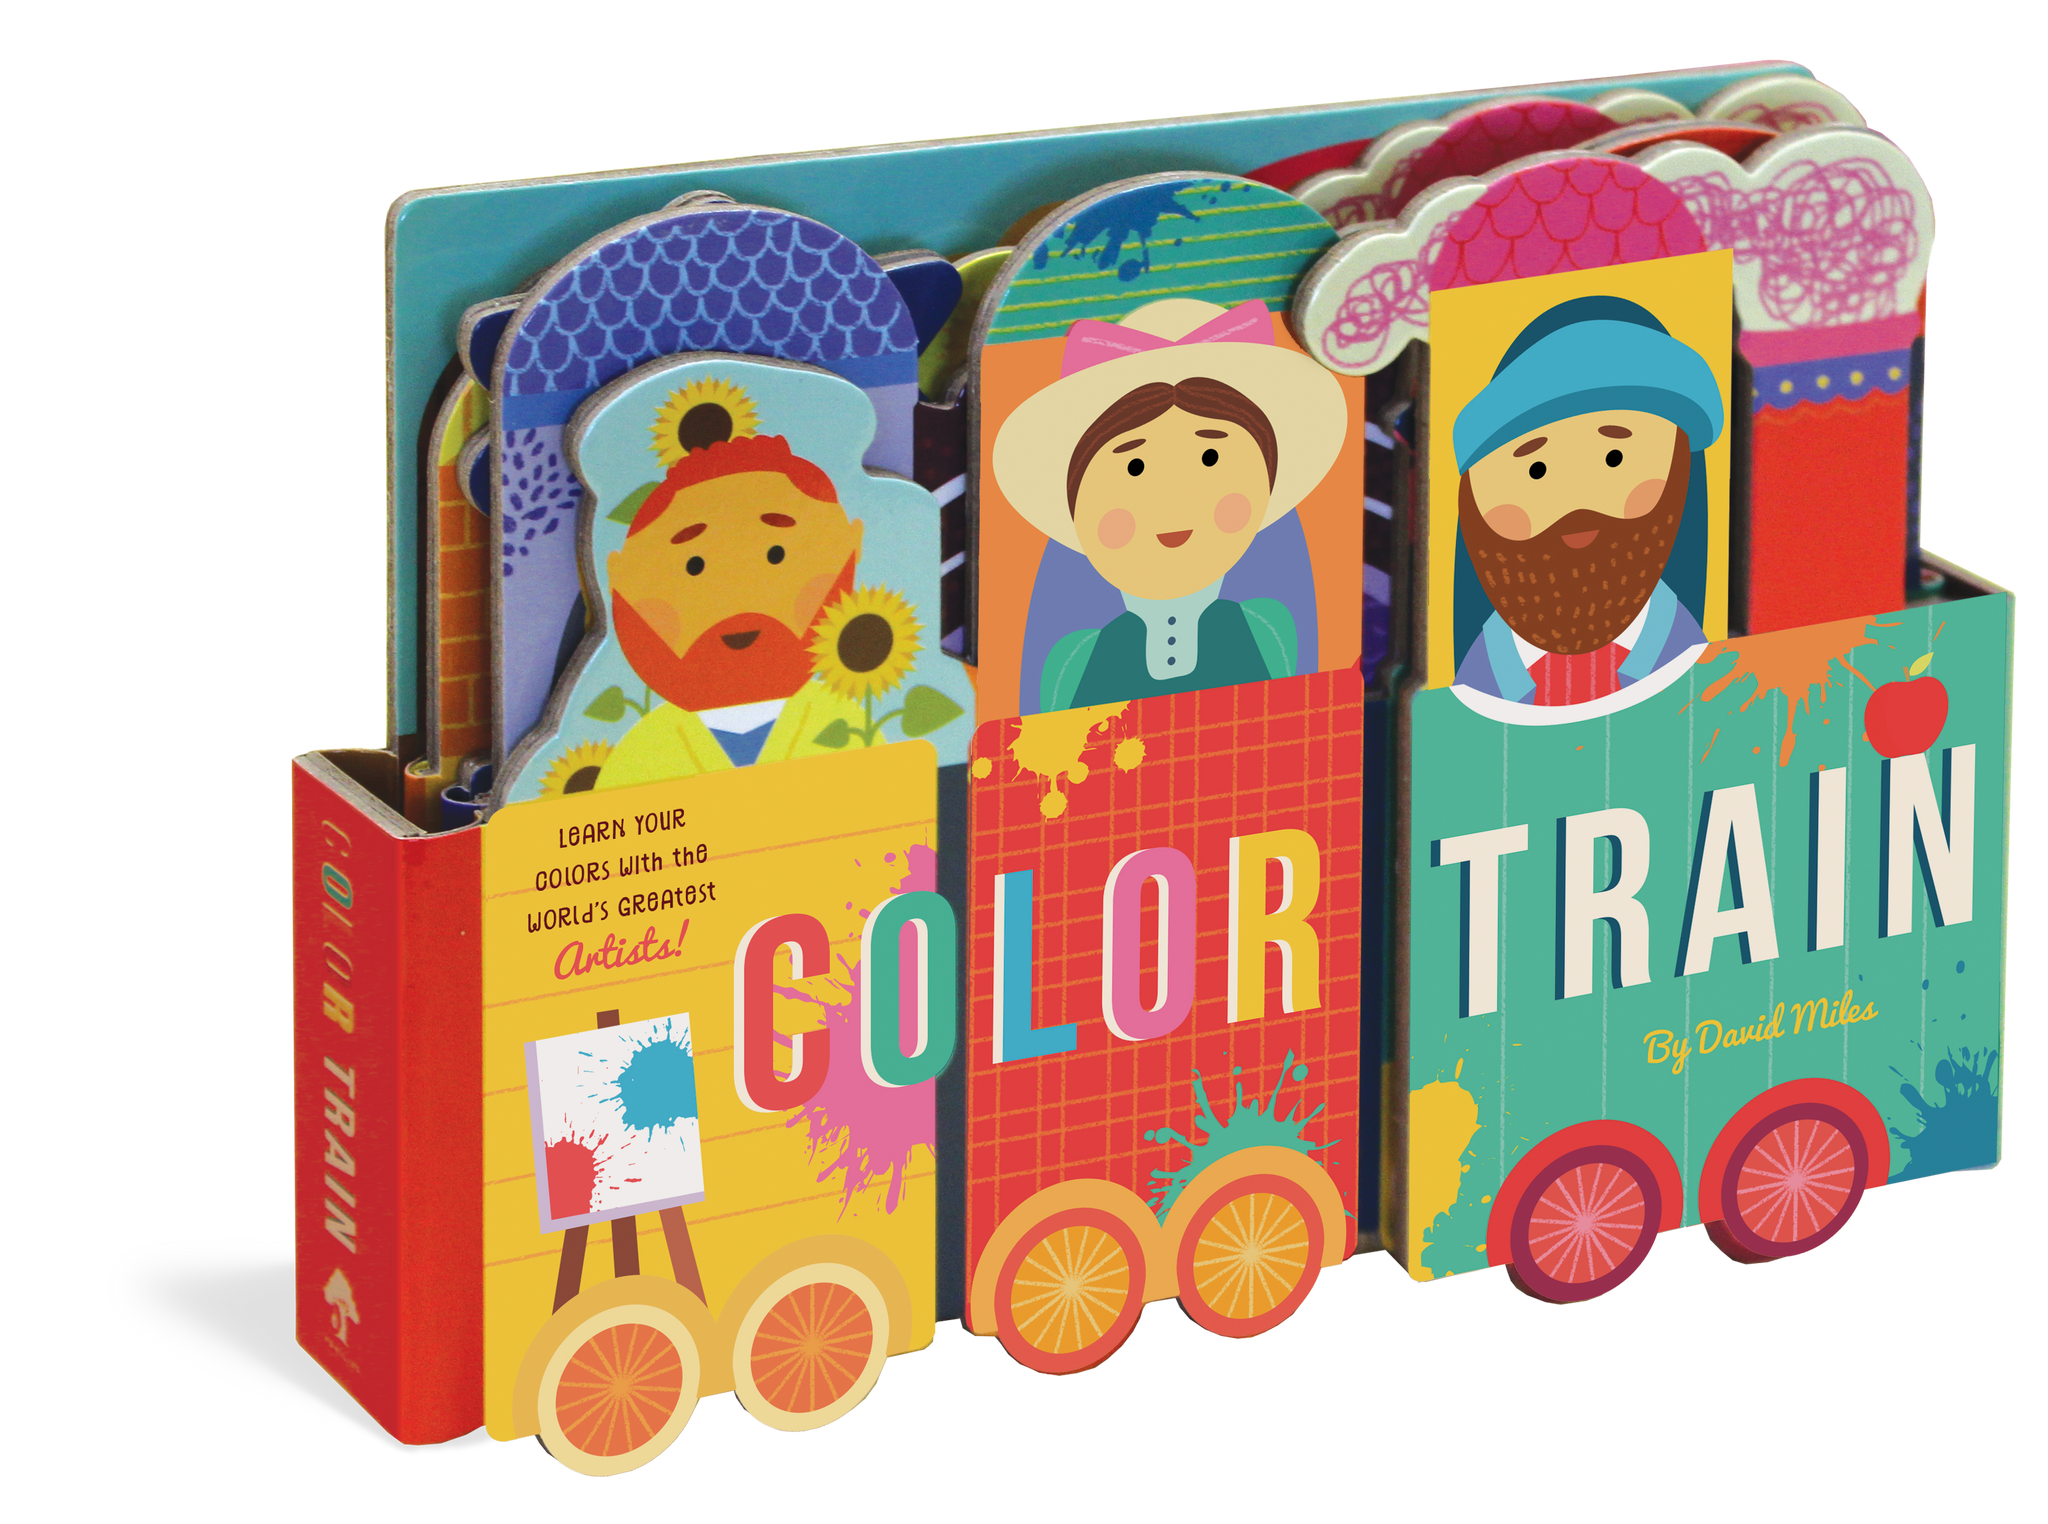 Color Train Book